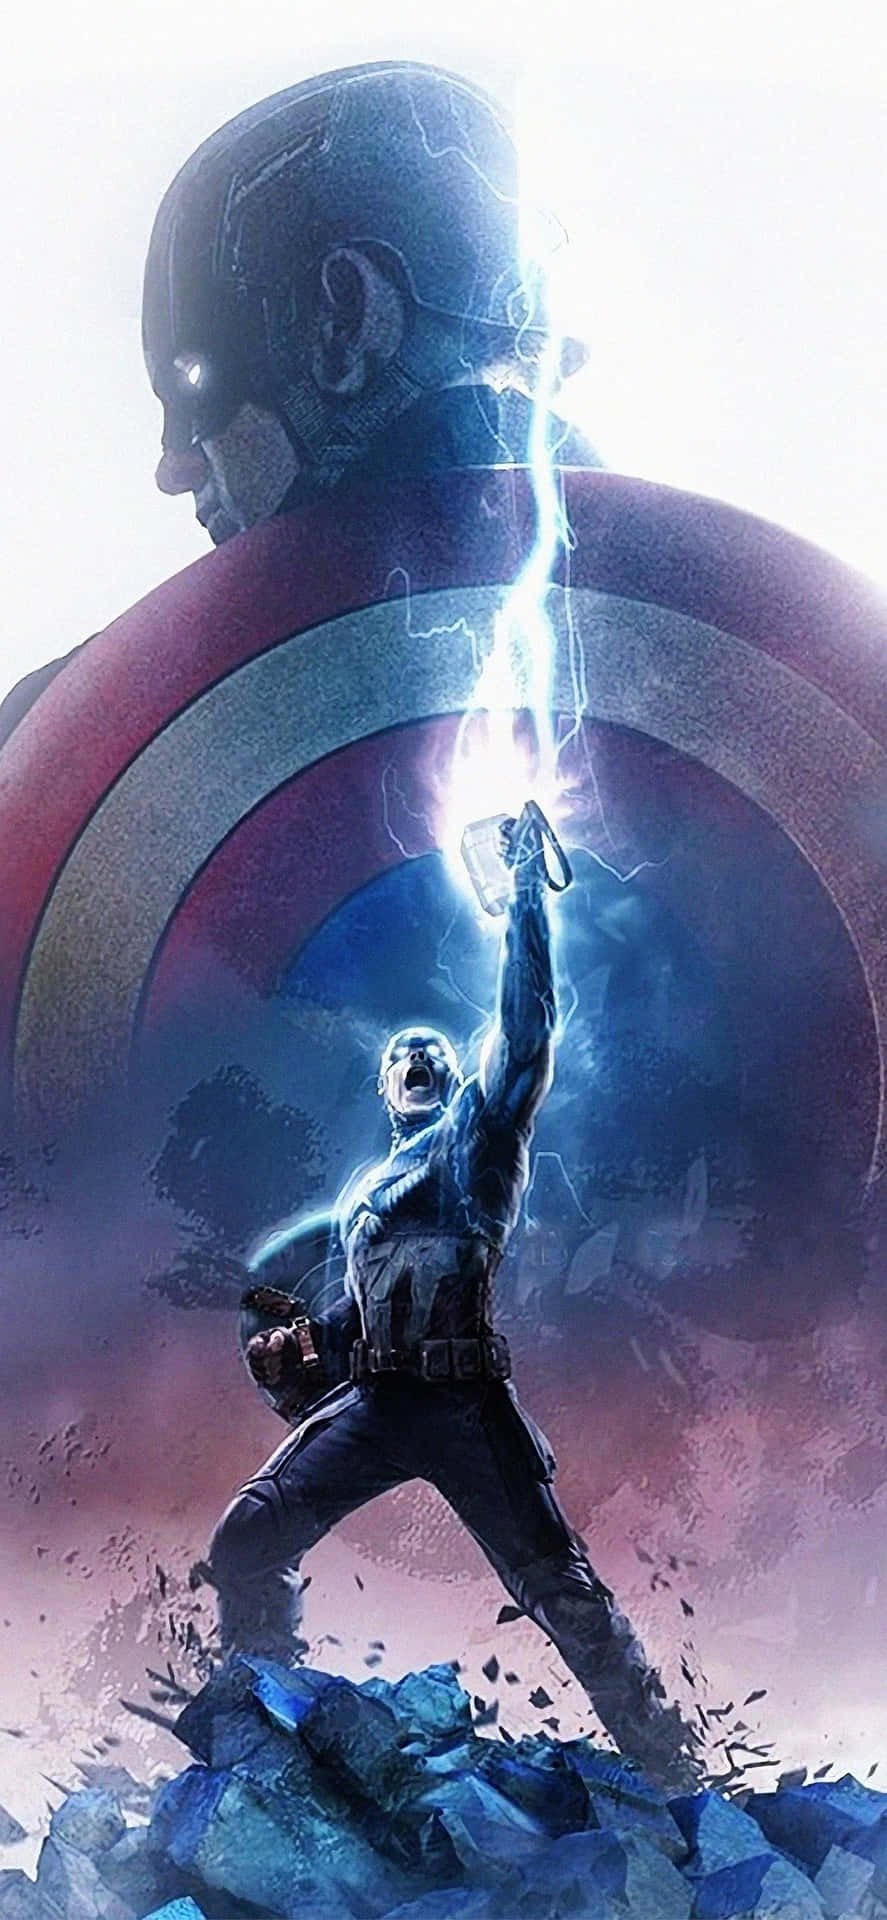 Tittapå Captain America Utlösa Kraften I Avengers I 4k På Din Datorskärm Eller Mobilbakgrund. Wallpaper